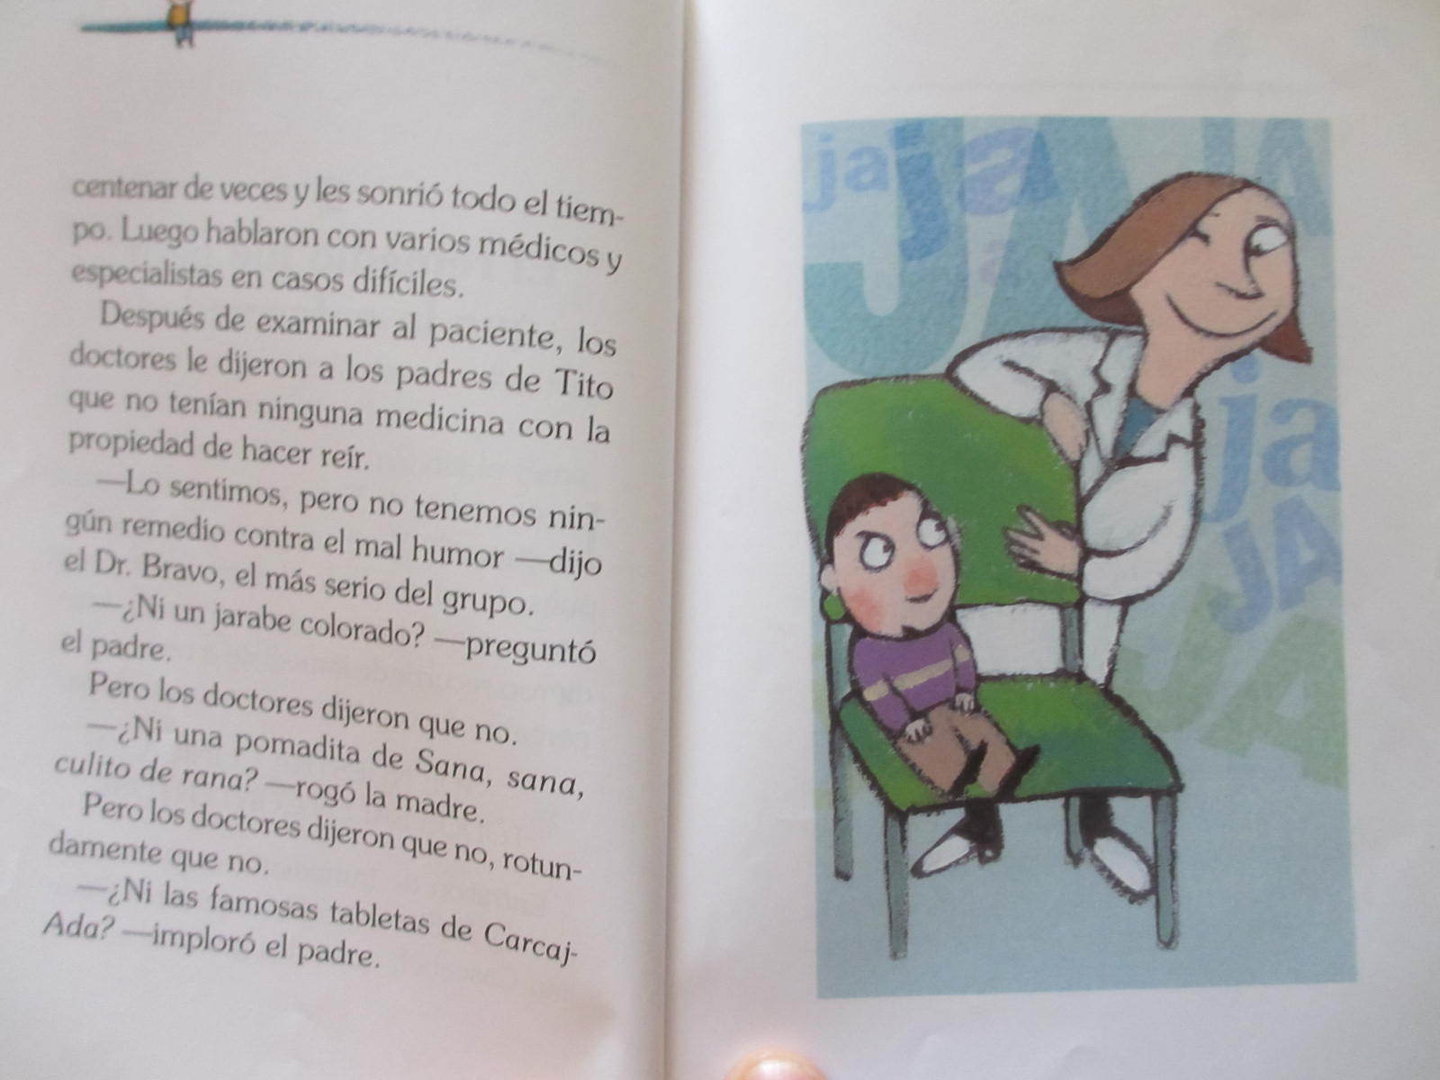 Libro: El niño que nunca se reía por Yanitzia Canetti